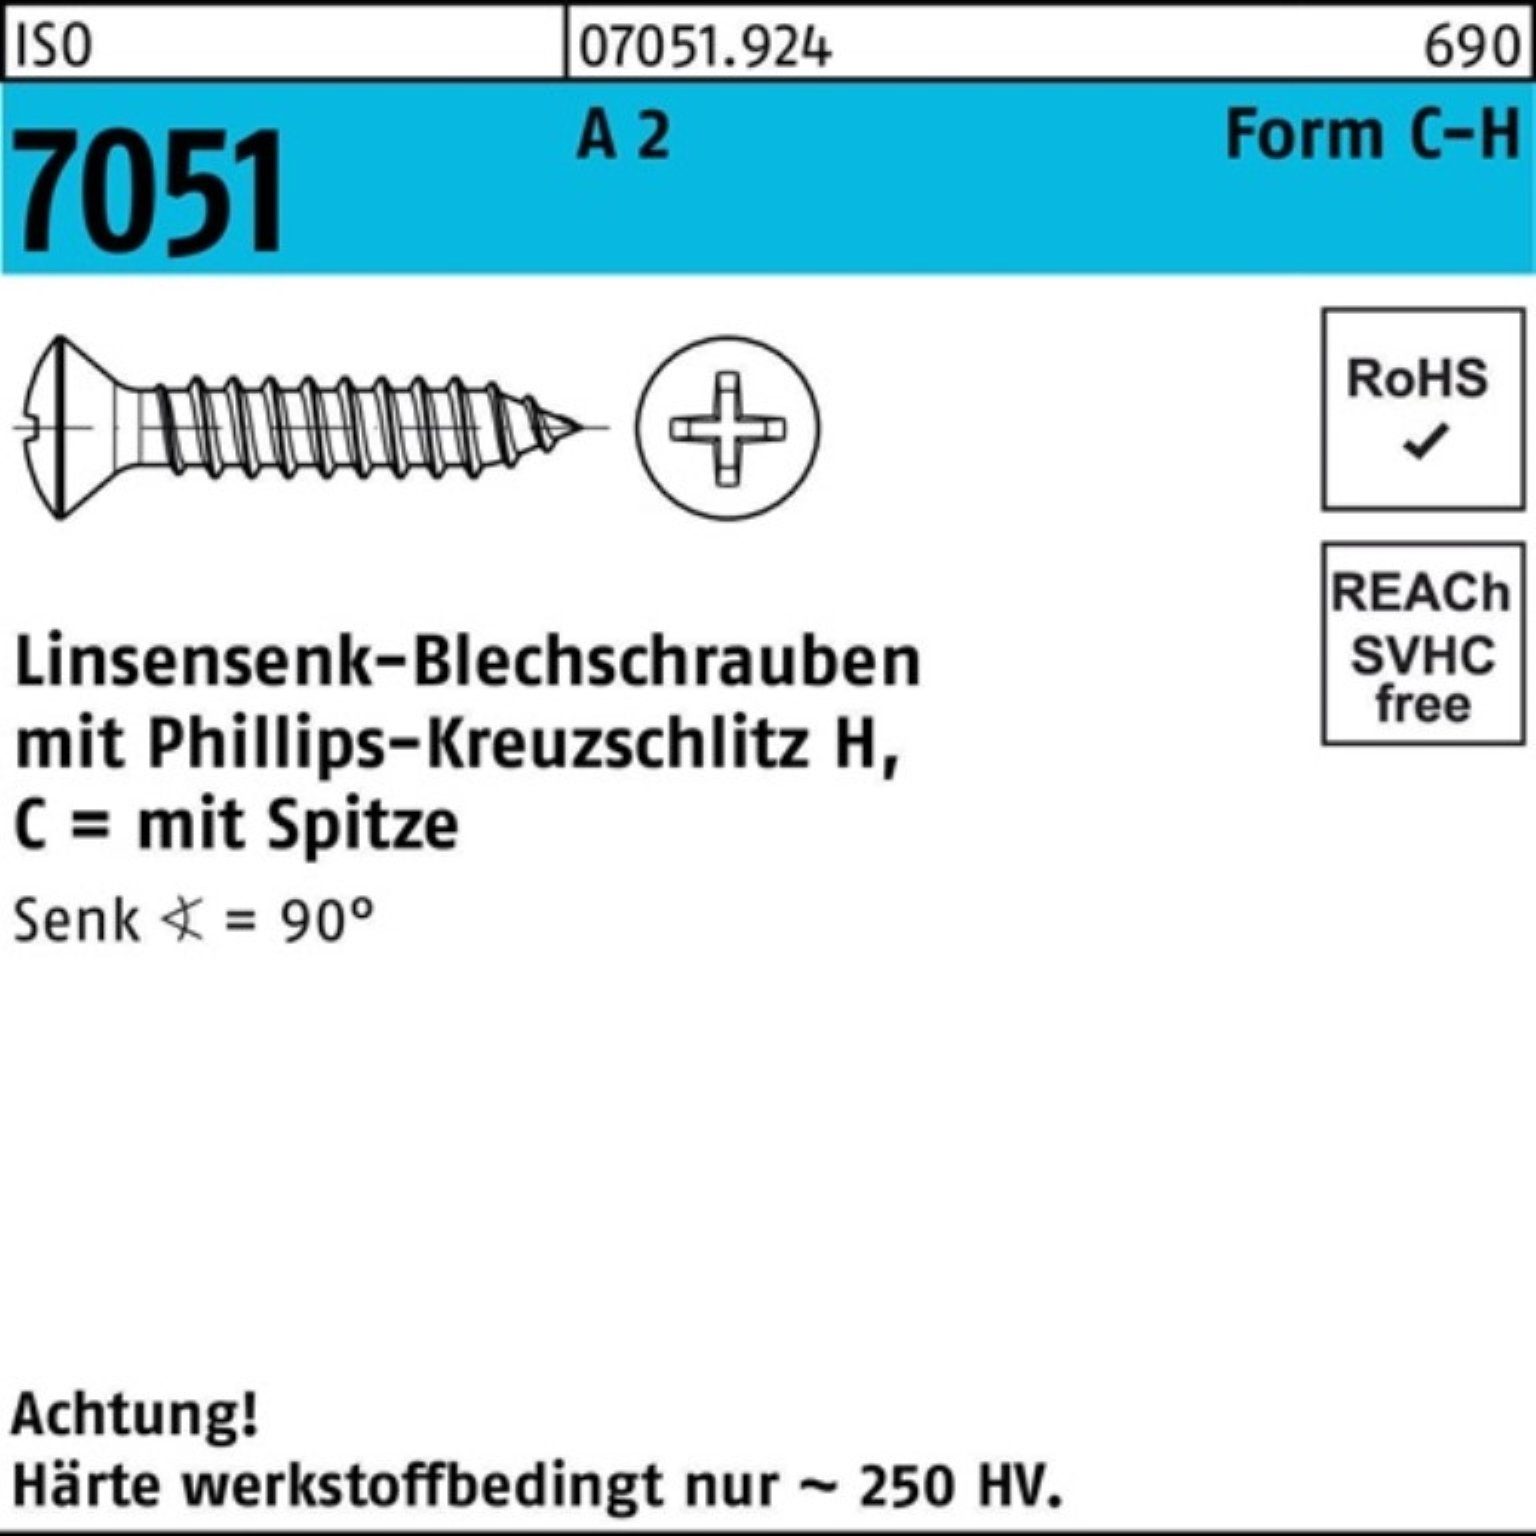 Reyher Blechschraube 1000er ISO -C-H 2,9x Spitze/PH 2 A Blechschraube LISEKO 1 22 7051 Pack